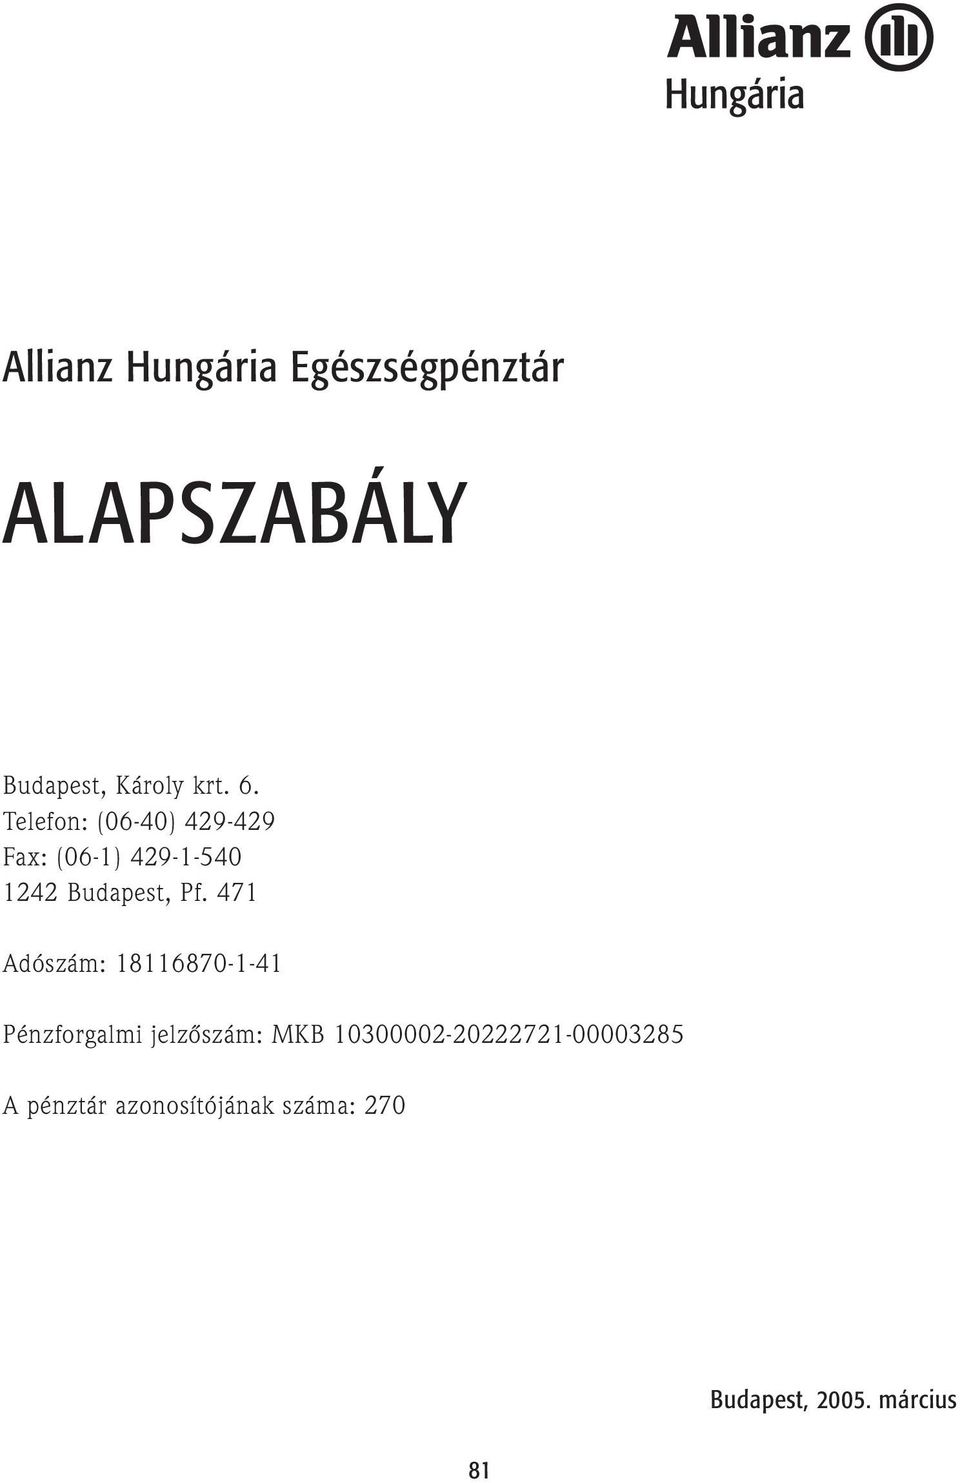 ALAPSZABÁLY. Allianz Hungária Egészségpénztár. Budapest, Károly krt. 6.  Telefon: (06-40) Fax: (06-1) Budapest, Pf. - PDF Free Download